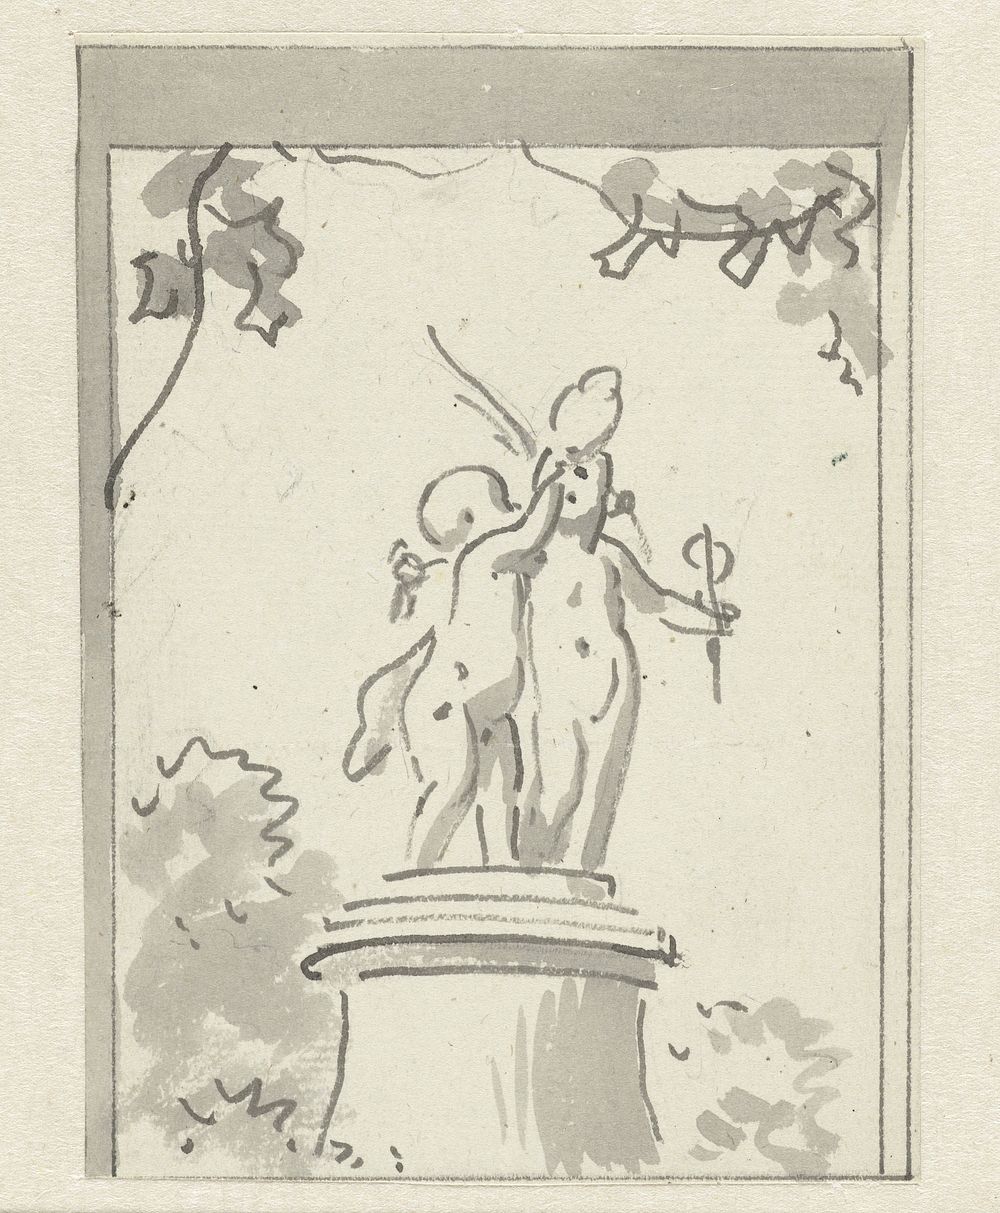 Twee putti op een voetstuk (c. 1752 - c. 1819) by Jurriaan Andriessen